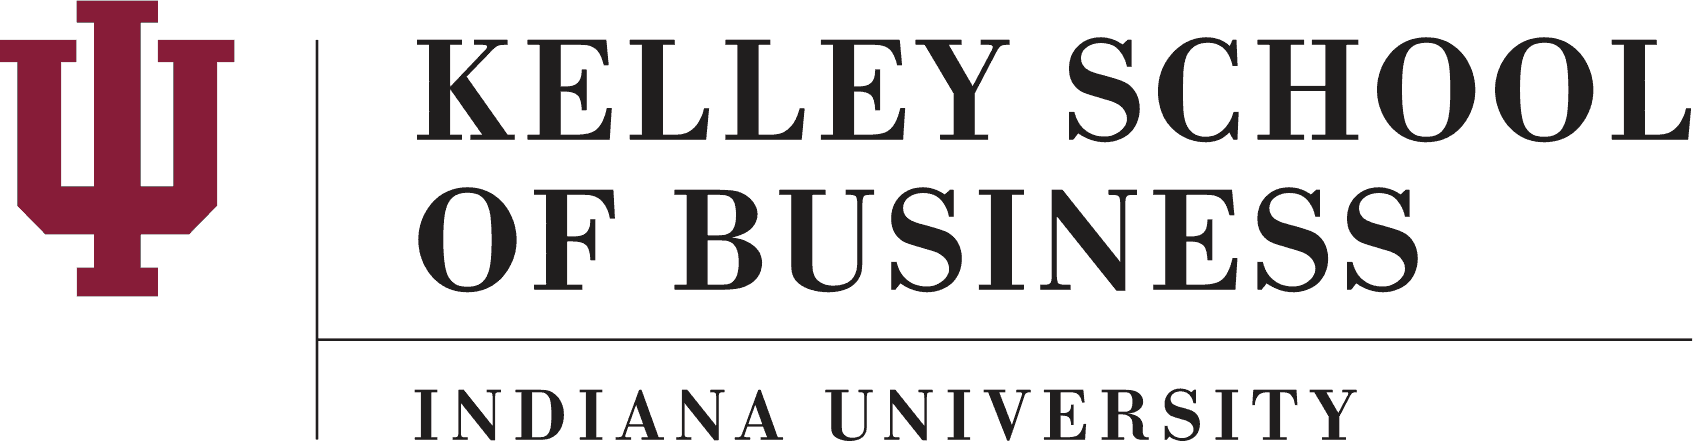 Indiana University Online MBA